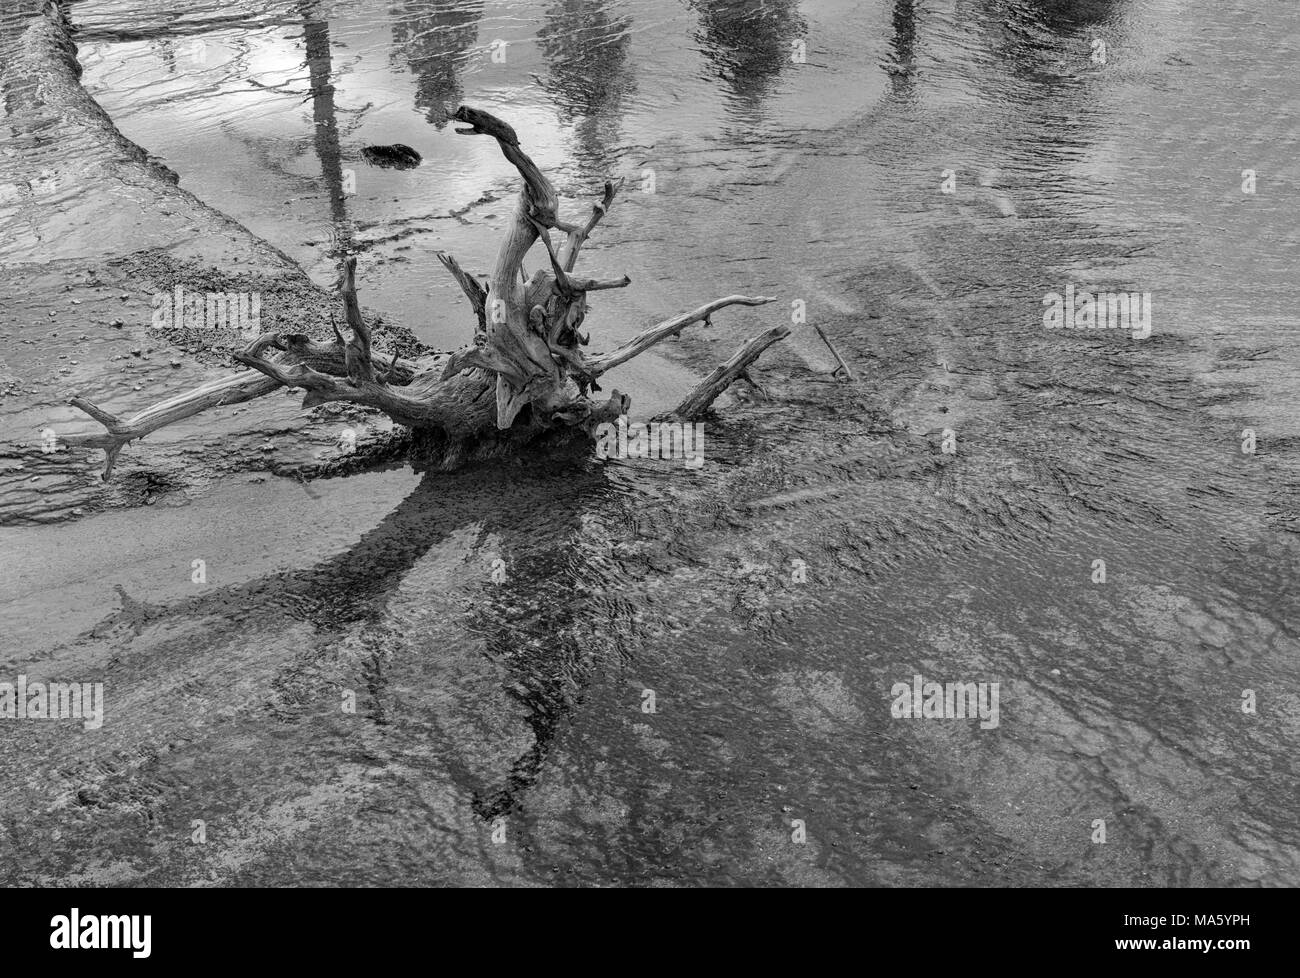 Acqua poco profonda con il moncone di albero morto, acqua onde e increspature. Immagine in bianco e nero. Foto Stock